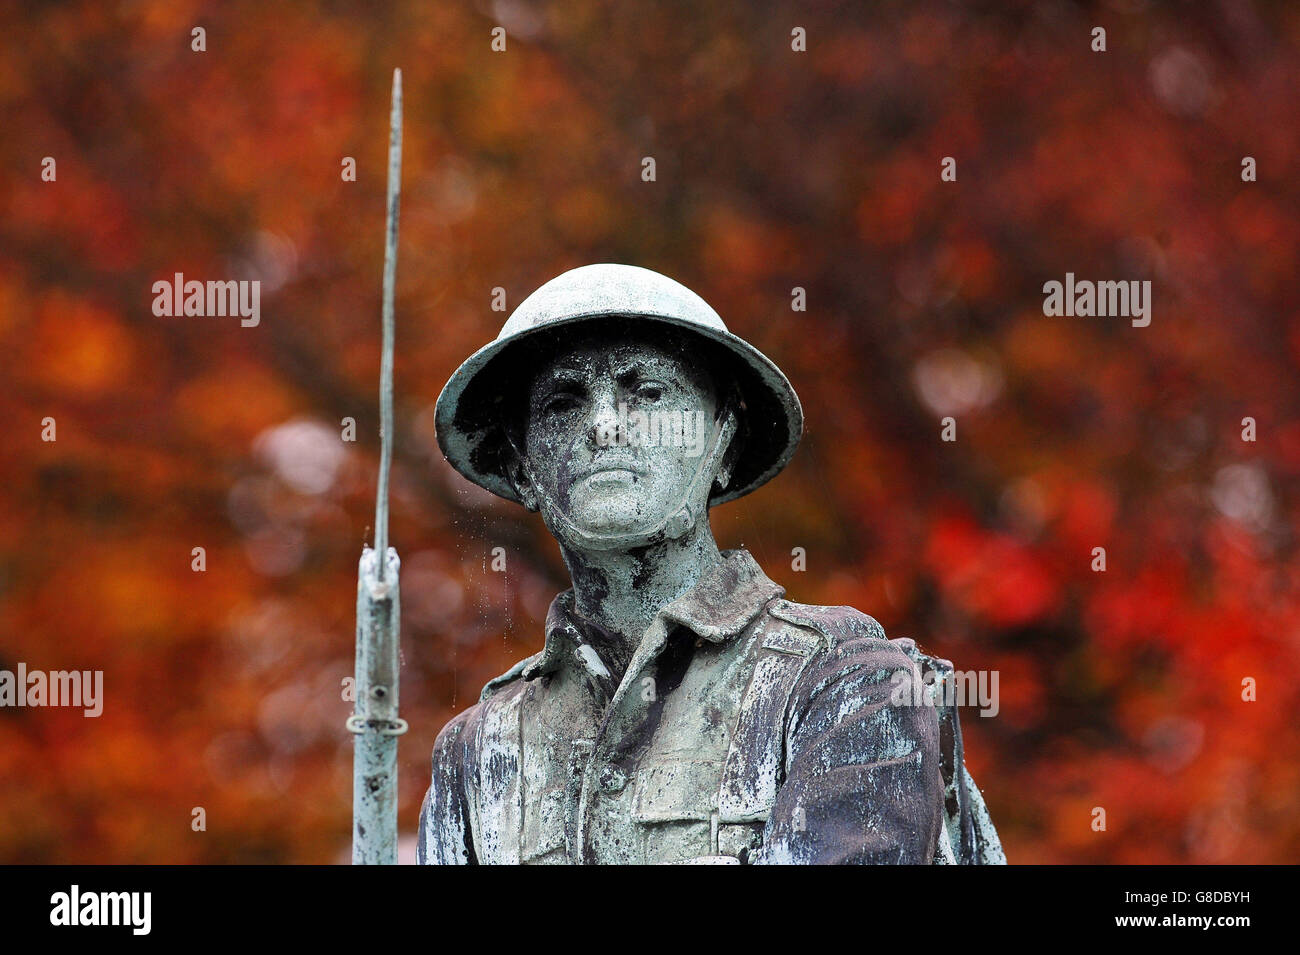 Un soldat de la Grande Guerre sur le Monument commémoratif de guerre à Shildon, dans le comté de Durham, sur fond d'arbres de couleur automnale, alors que la nation se prépare à se souvenir de ses militaires tombés avec les services du souvenir qui se tiendront dans tout le Royaume-Uni au cours des prochains jours. Banque D'Images